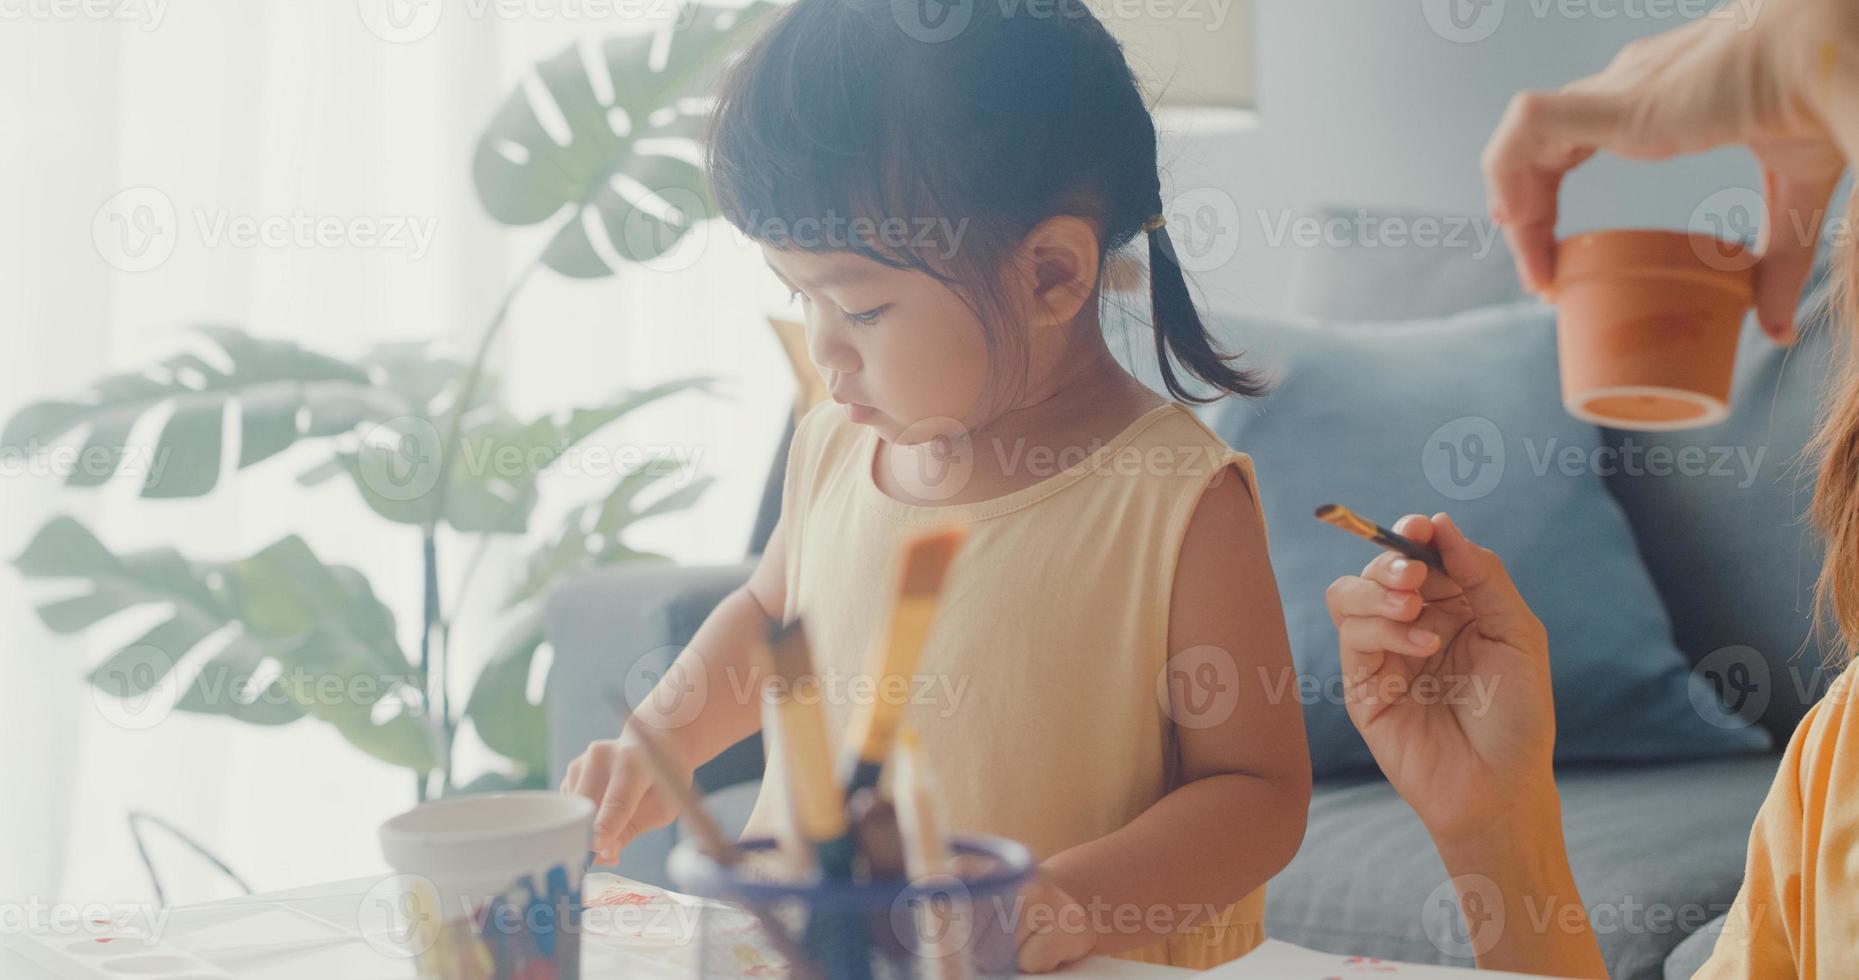 Joyeuse famille asiatique joyeuse, maman enseigne à une fille en bas âge peindre un pot en céramique s'amusant à se détendre sur une table dans le salon de la maison. passer du temps ensemble, distance sociale, quarantaine pour la prévention des coronavirus. photo